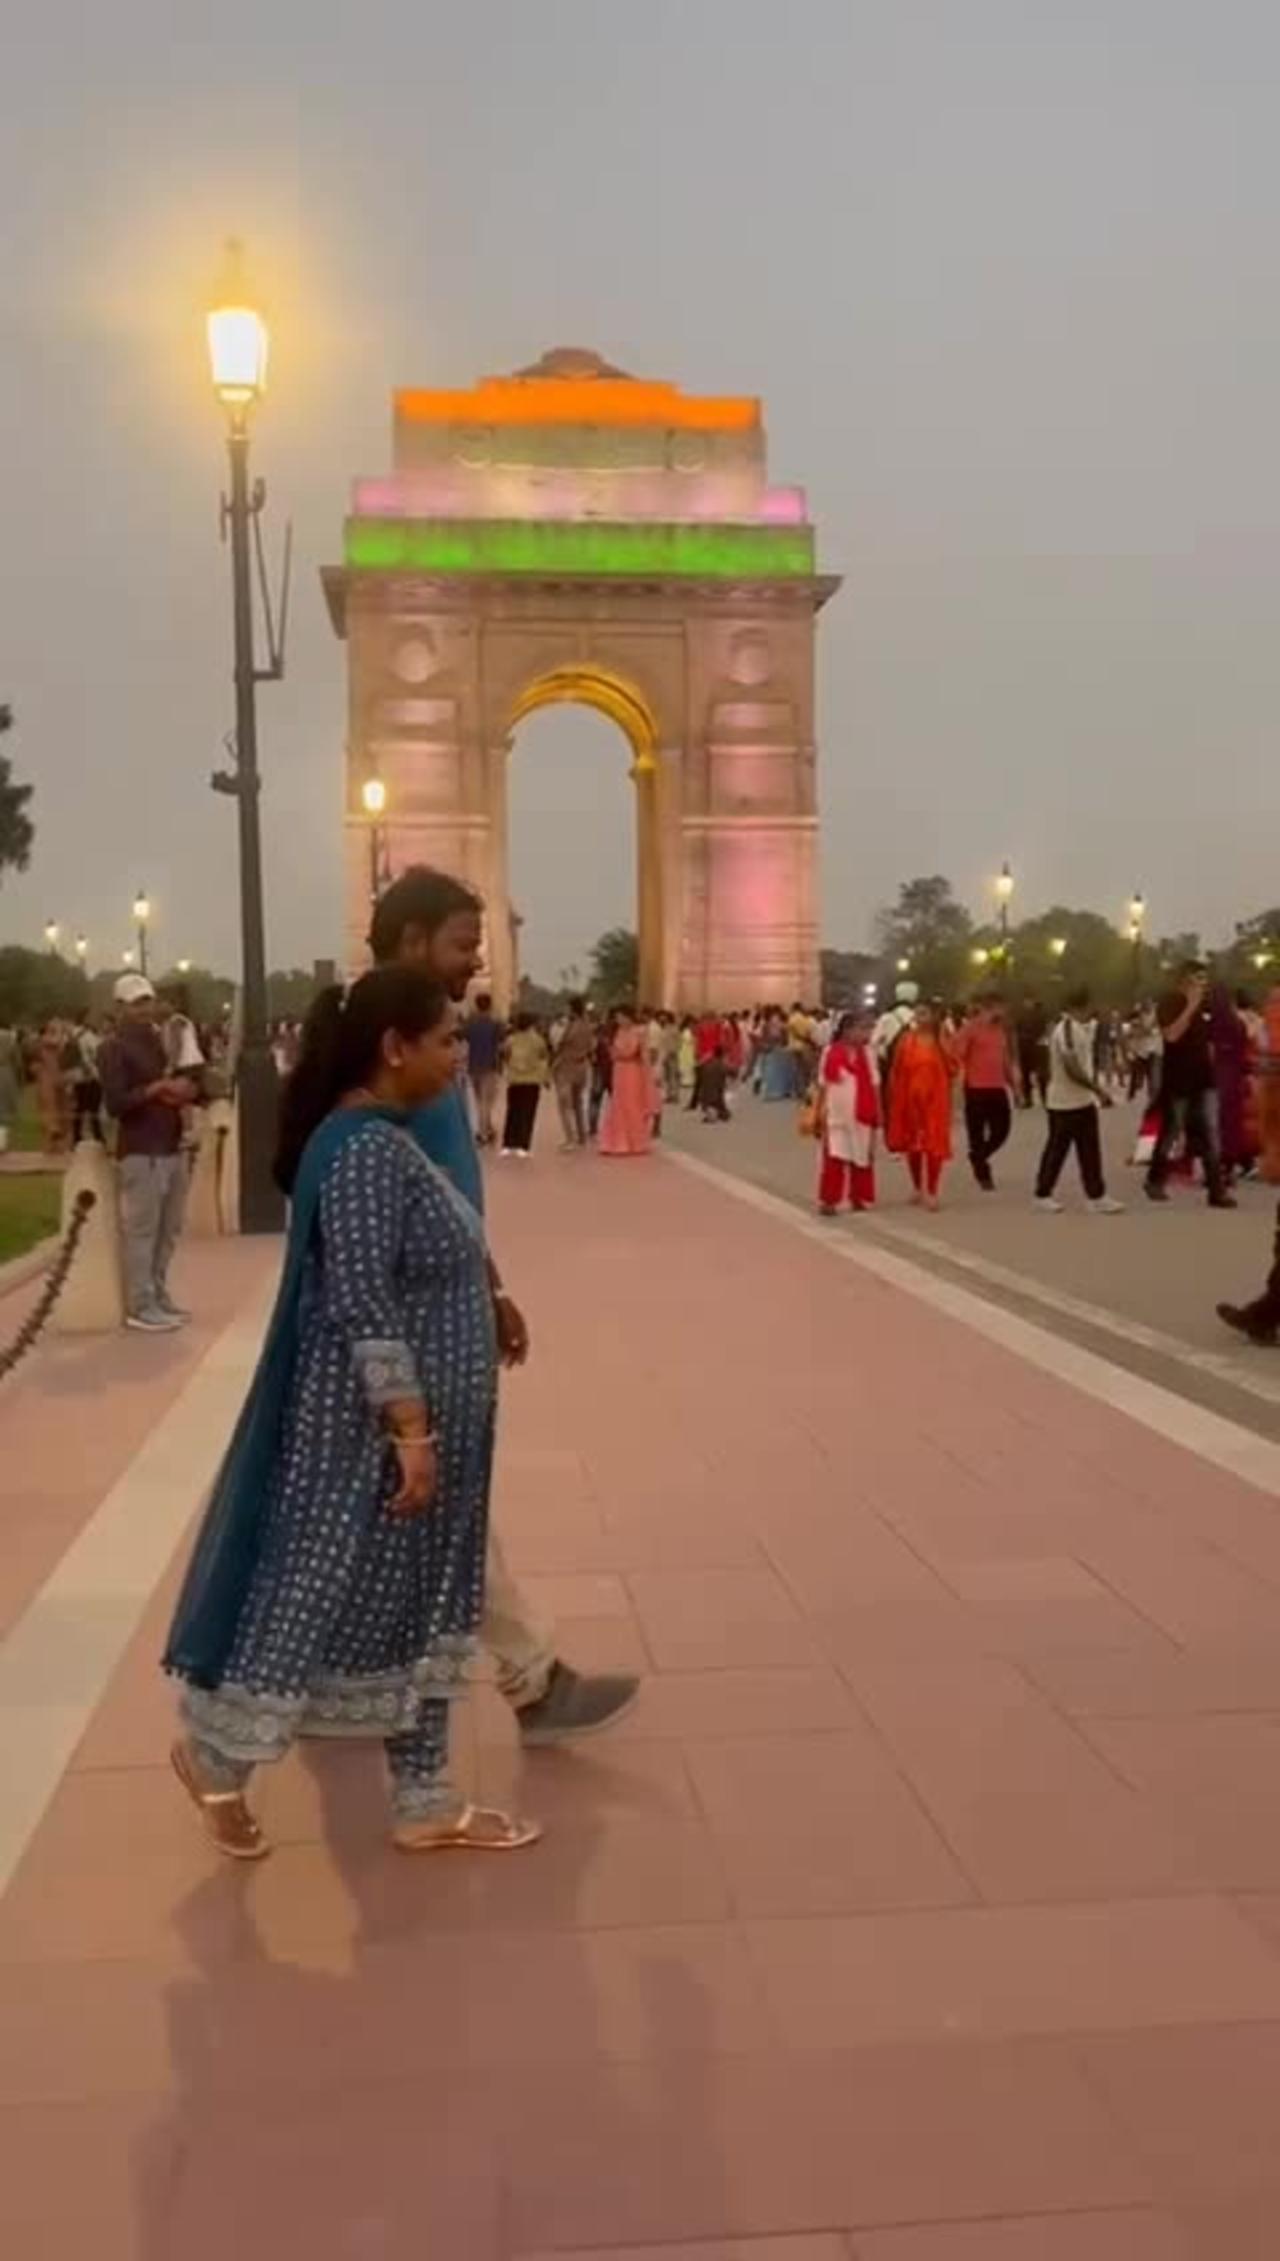 India gate new delhi